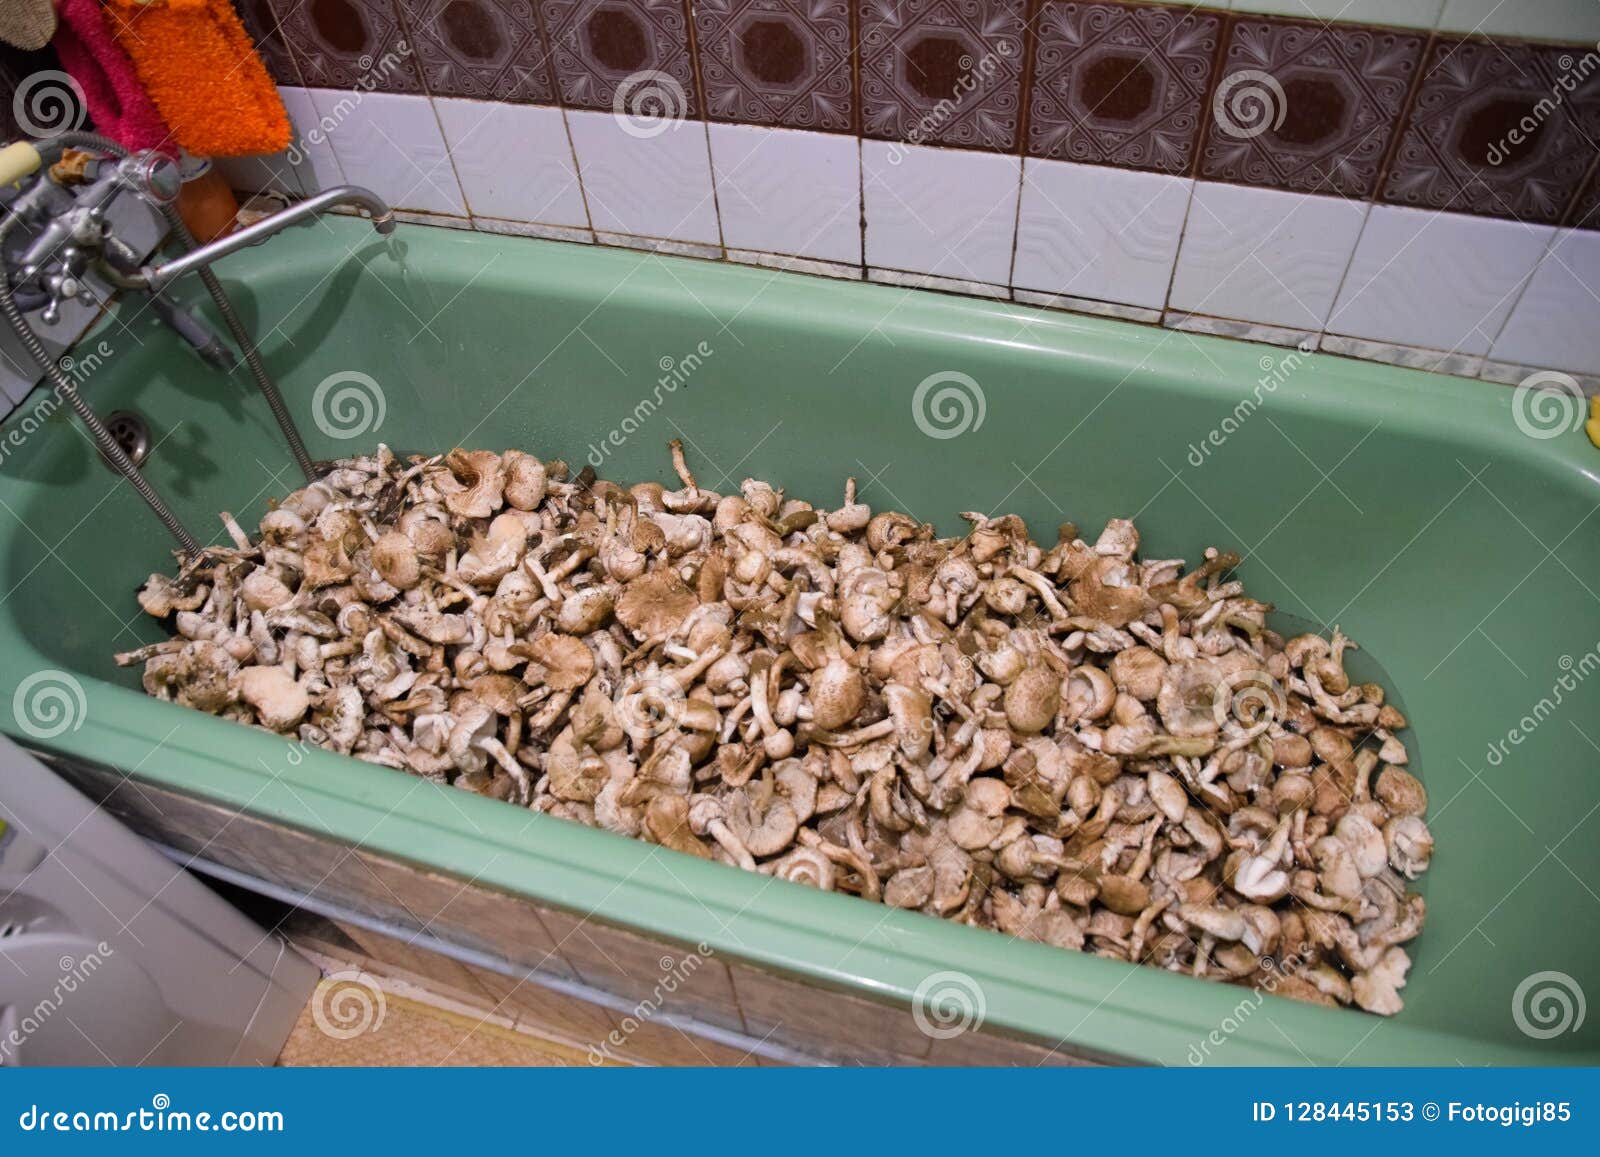 mushrooms in bathroom sink